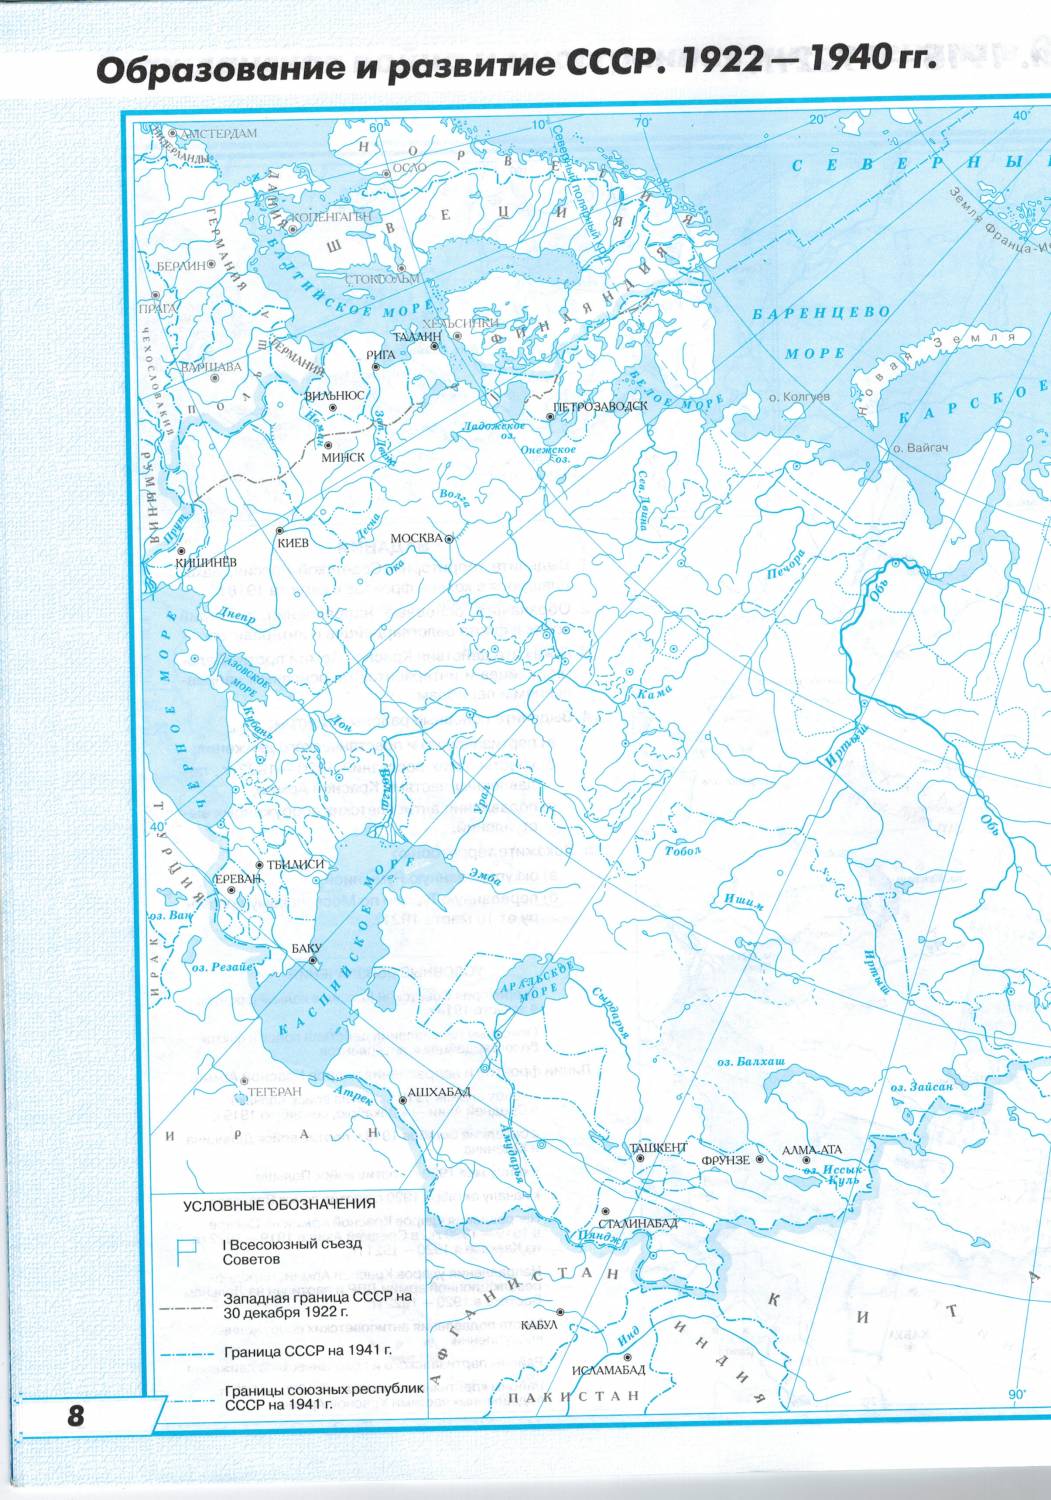 Образование и развитие СССР 1922-1940 контурная карта. Контурная карта ссср 1922 1940